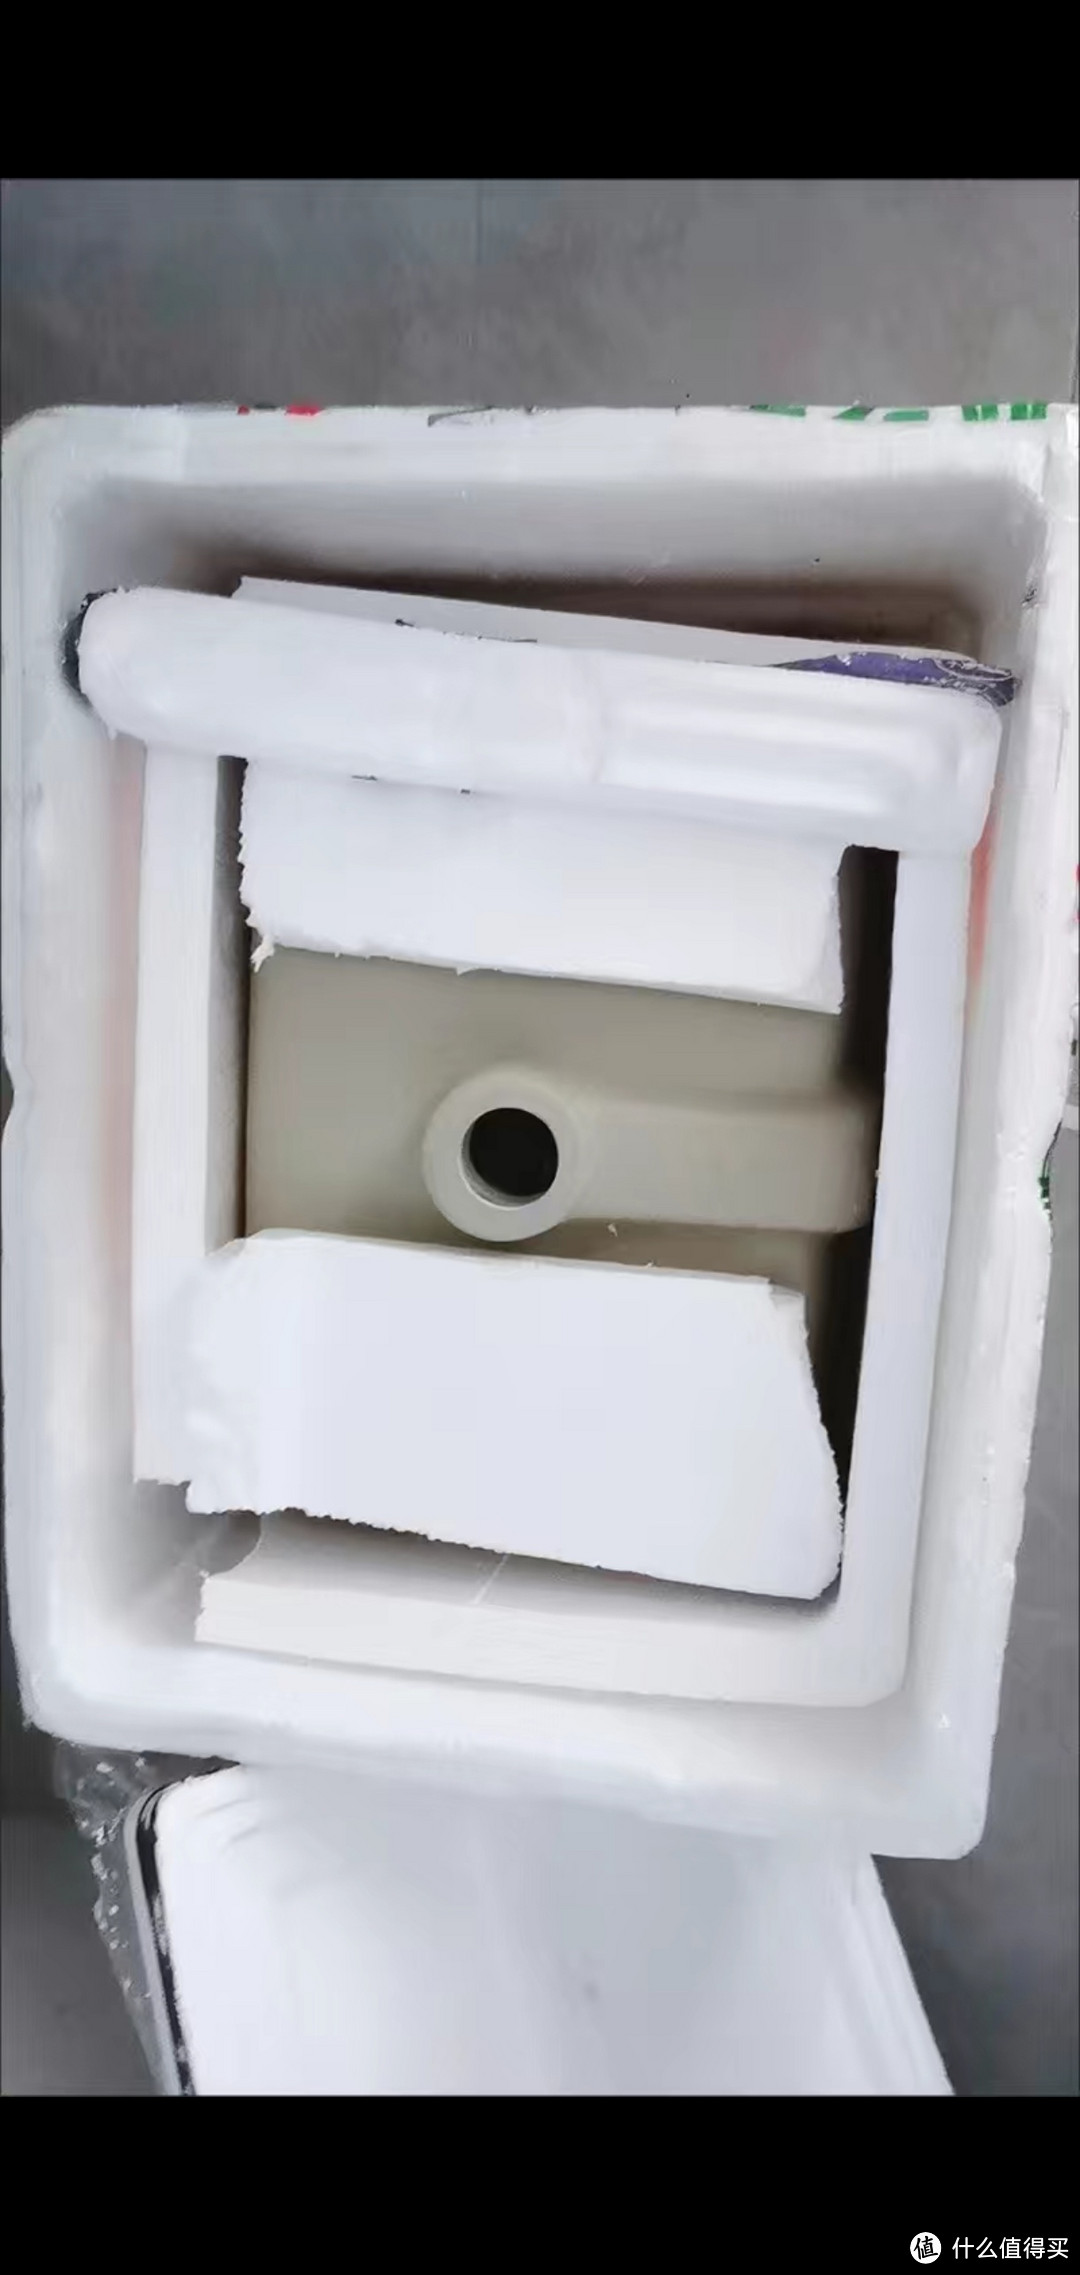 嵌入式陶瓷洗手池：白色陶瓷原色，五层施釉工艺，安全溢水孔与不锈钢下水器